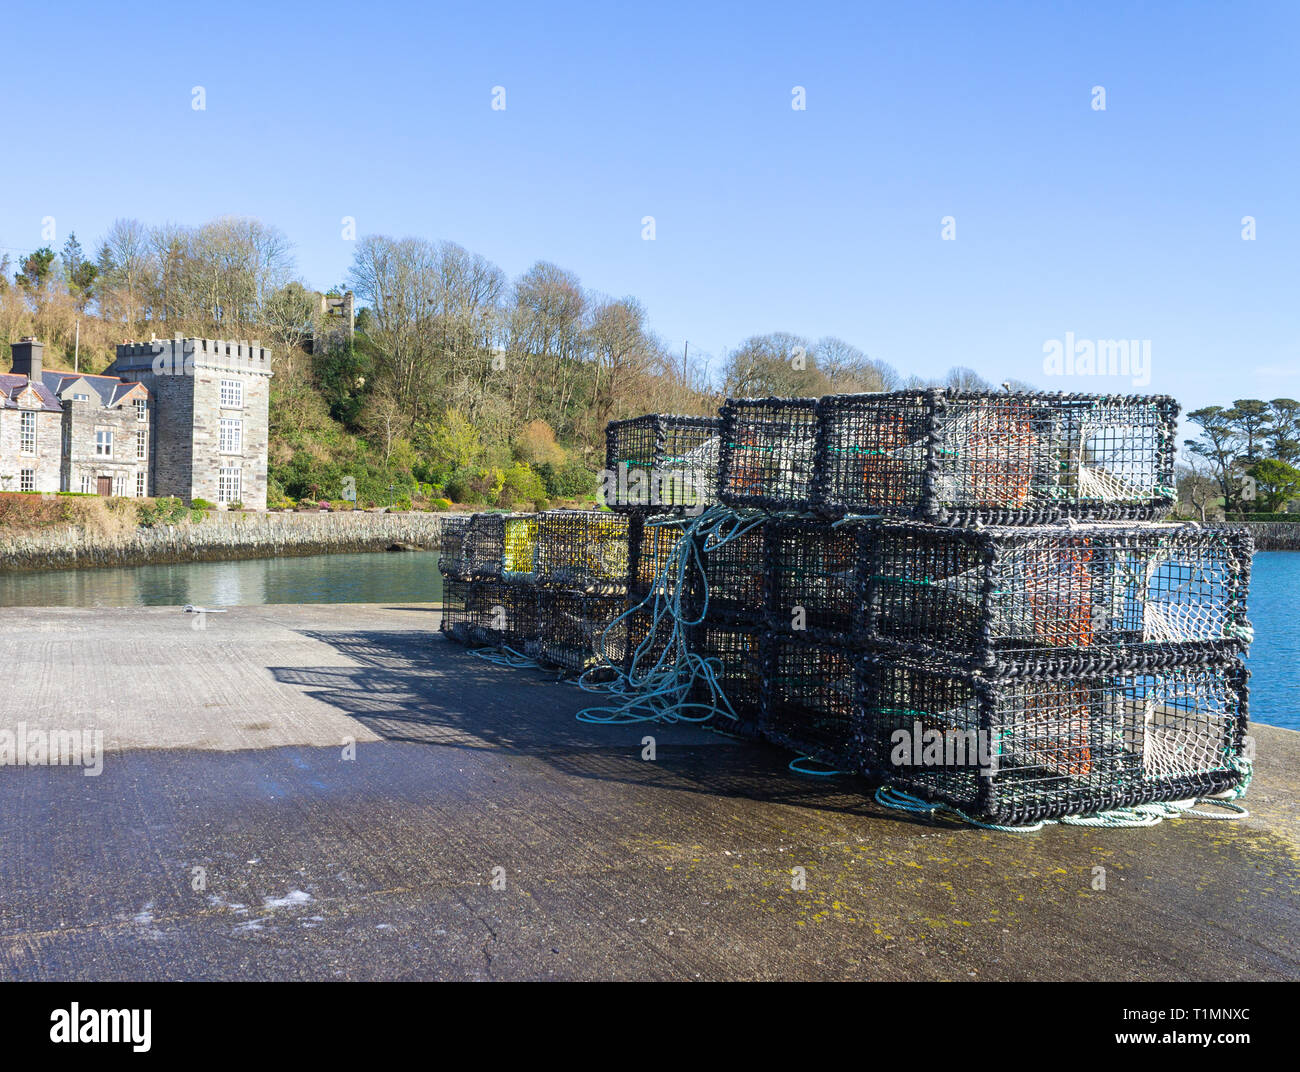 Des casiers à homard sur un quai avec un château en arrière-plan, castletownshend, West Cork, Irlande Banque D'Images